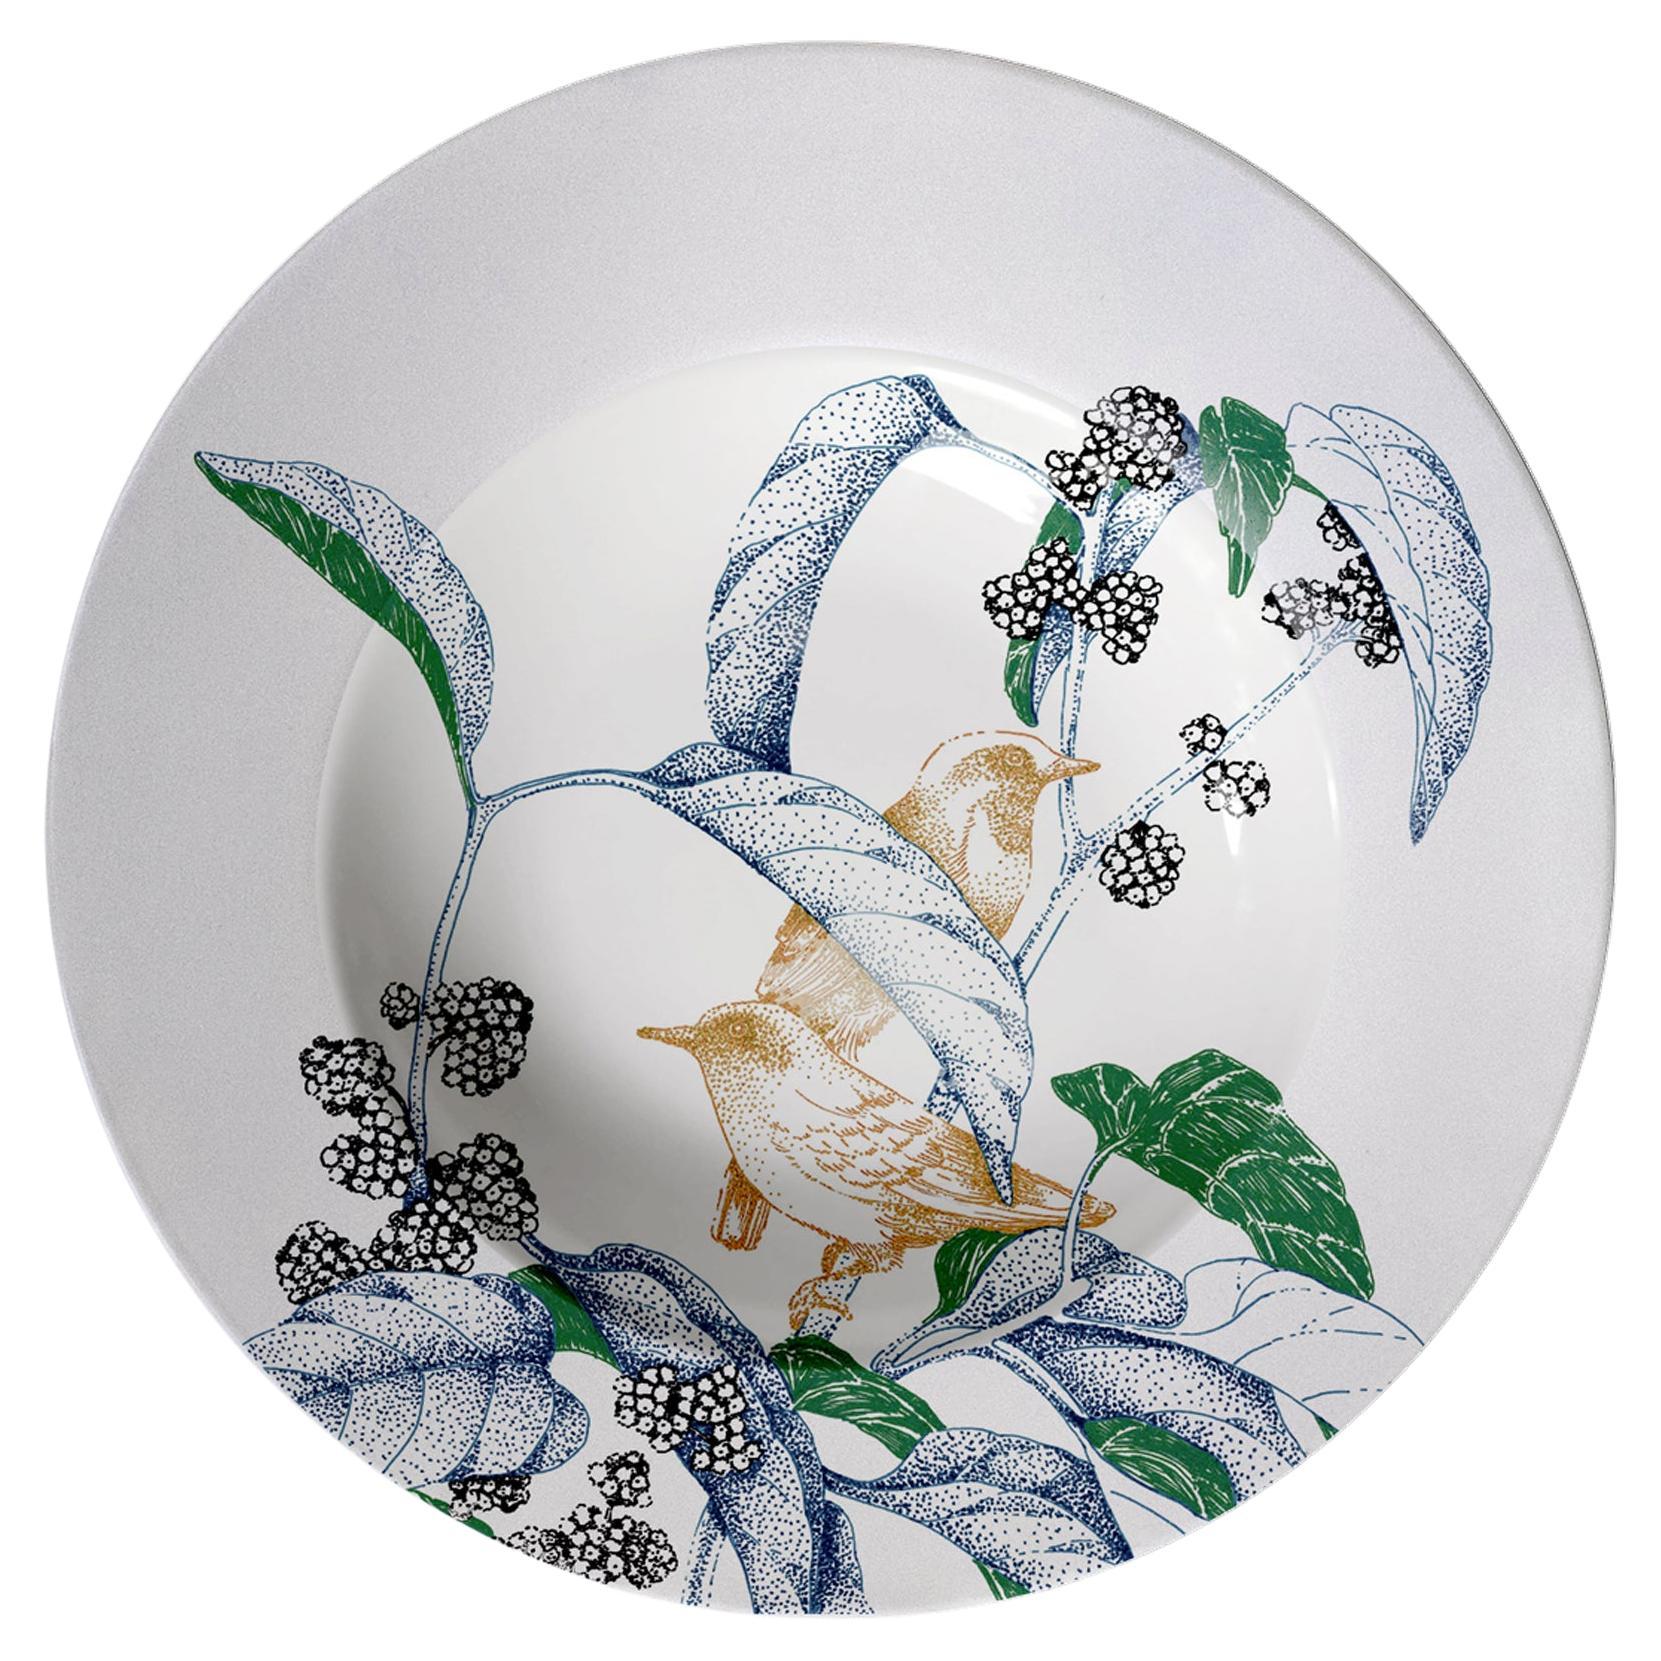 Bird Song, assiette à pâtes contemporaine en porcelaine avec oiseaux et fleurs